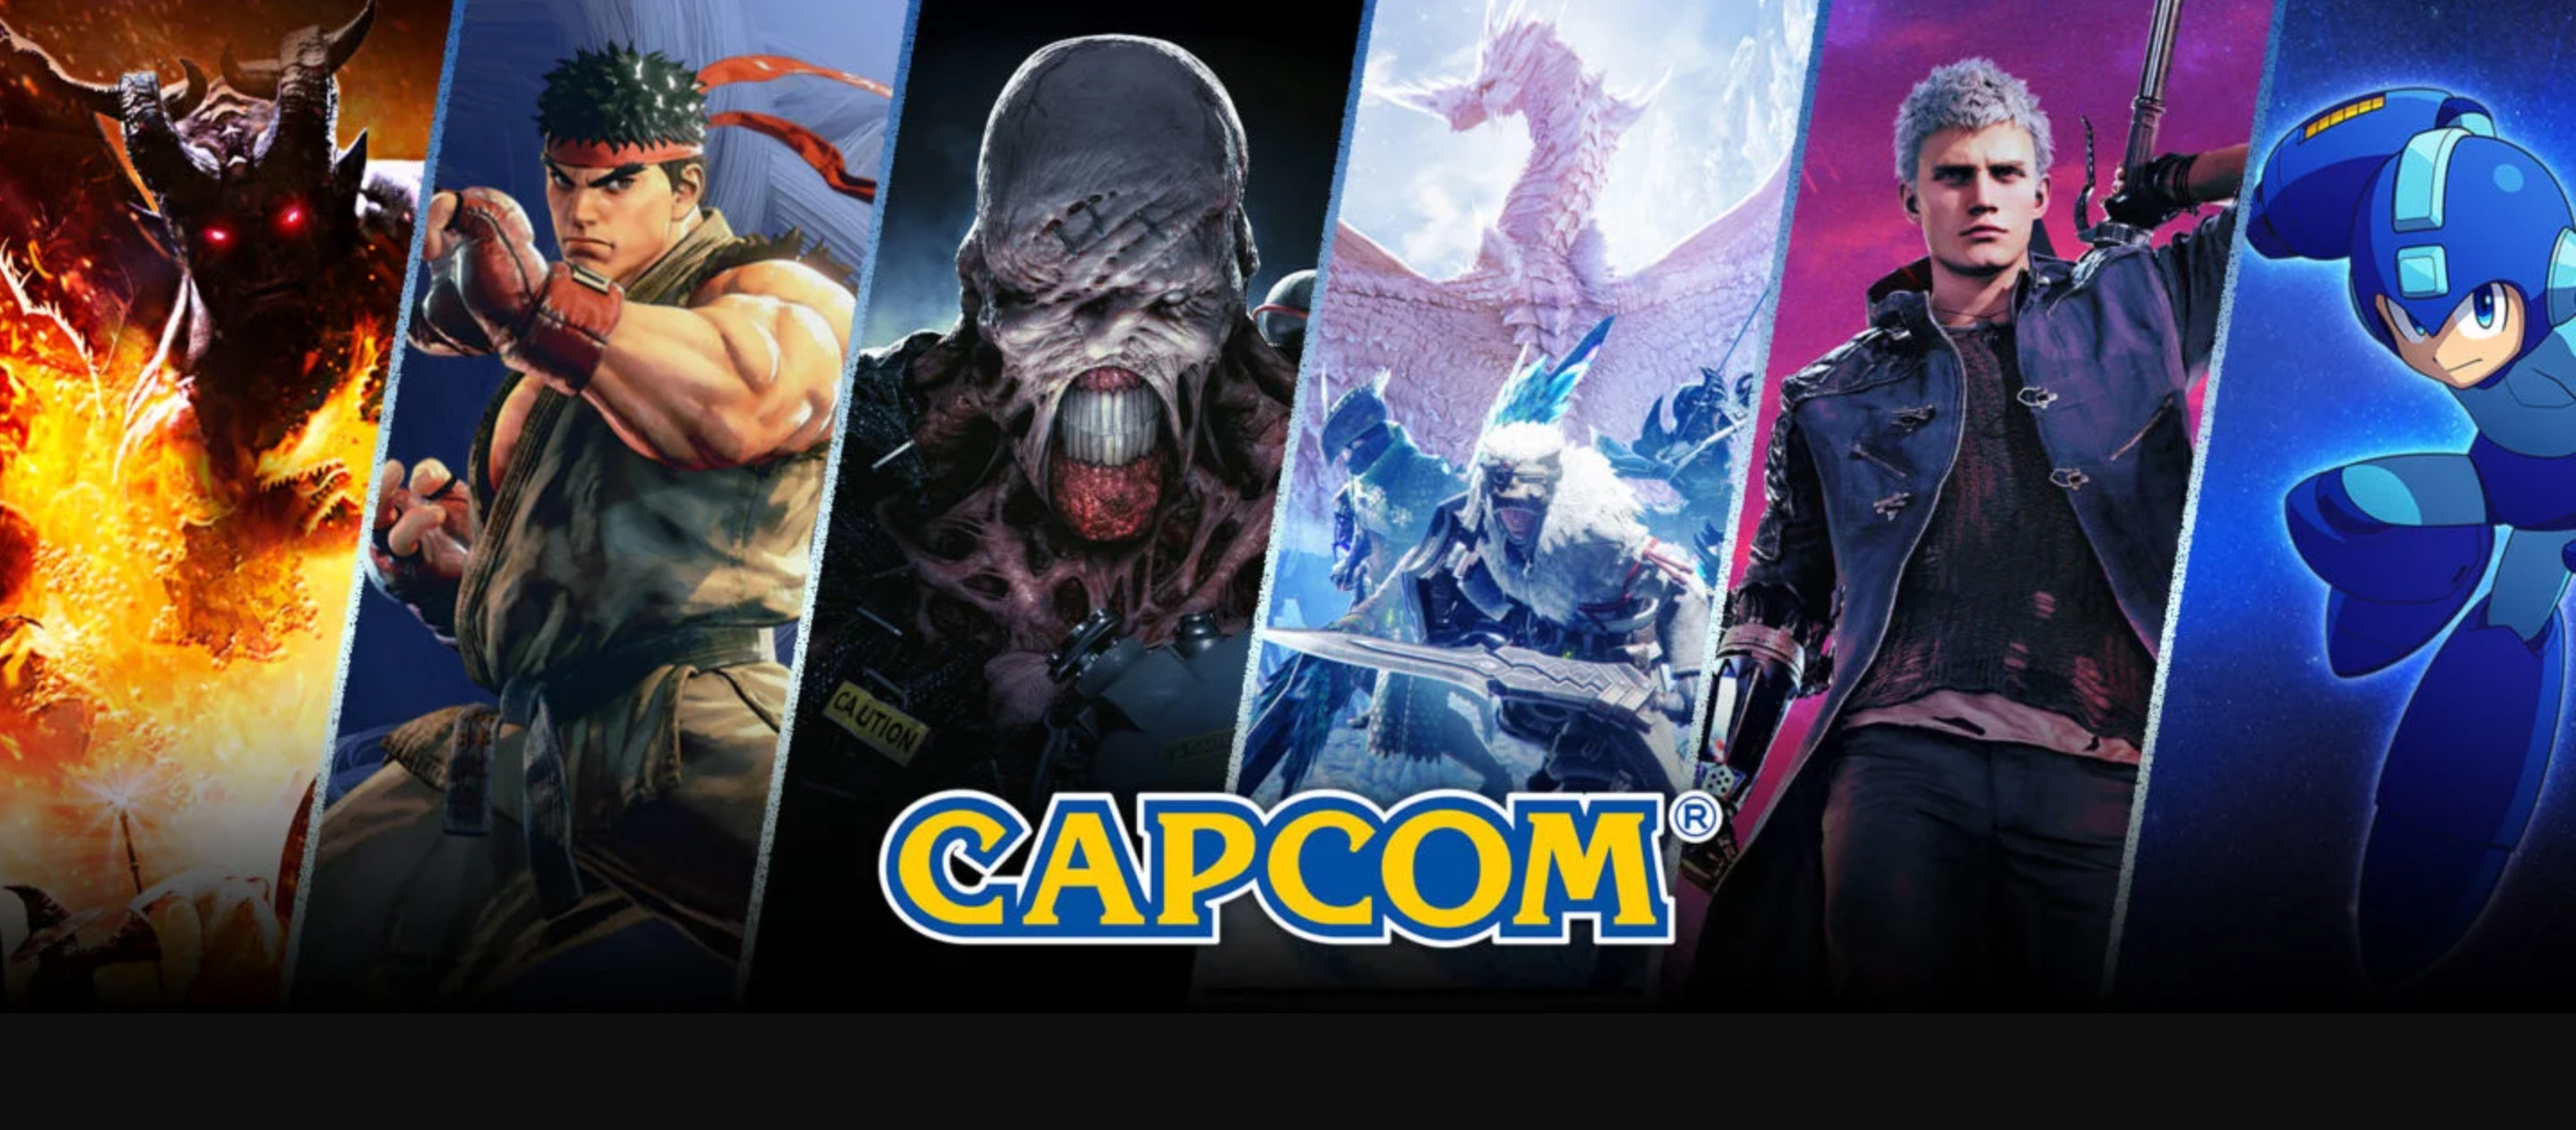 【PC游戏】Capcom游戏销量打破记录 股价来到历史新高